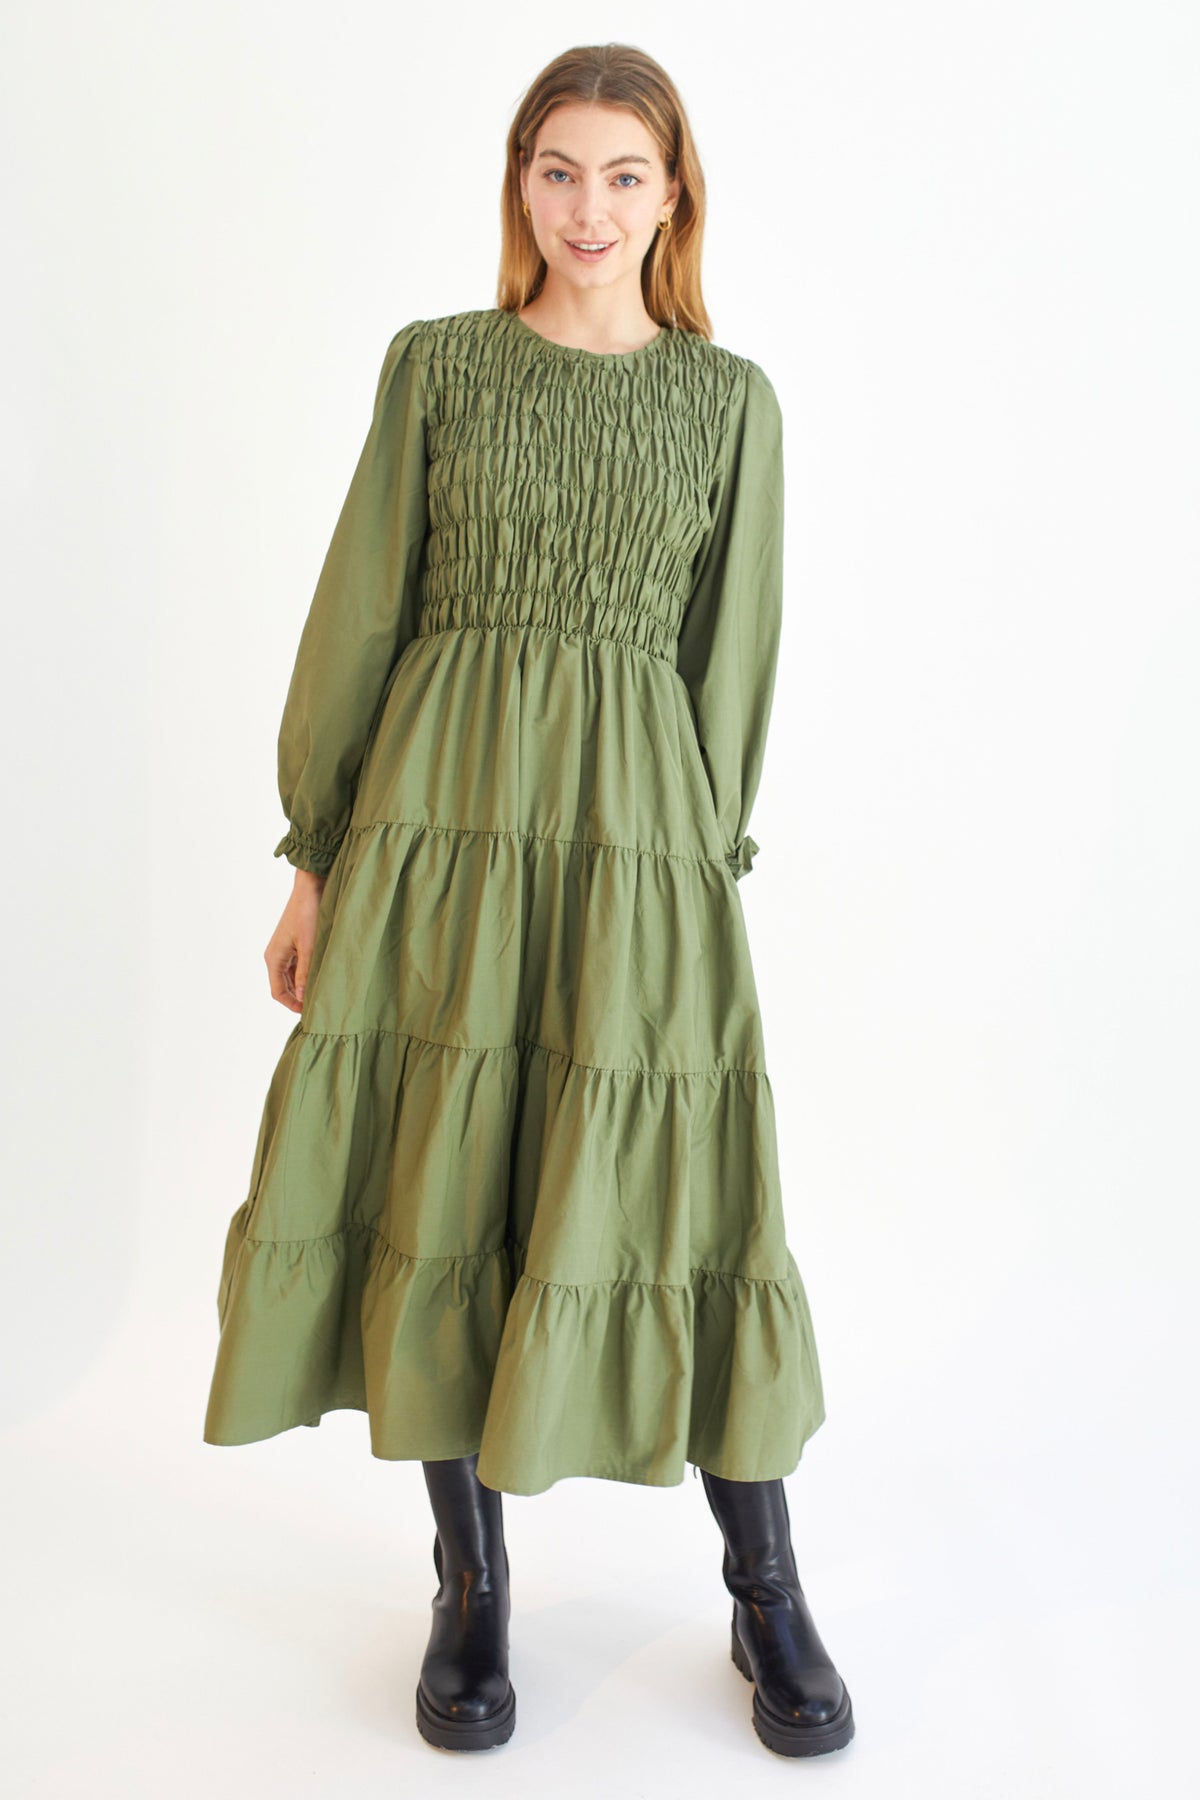 Fallon Dress Olive